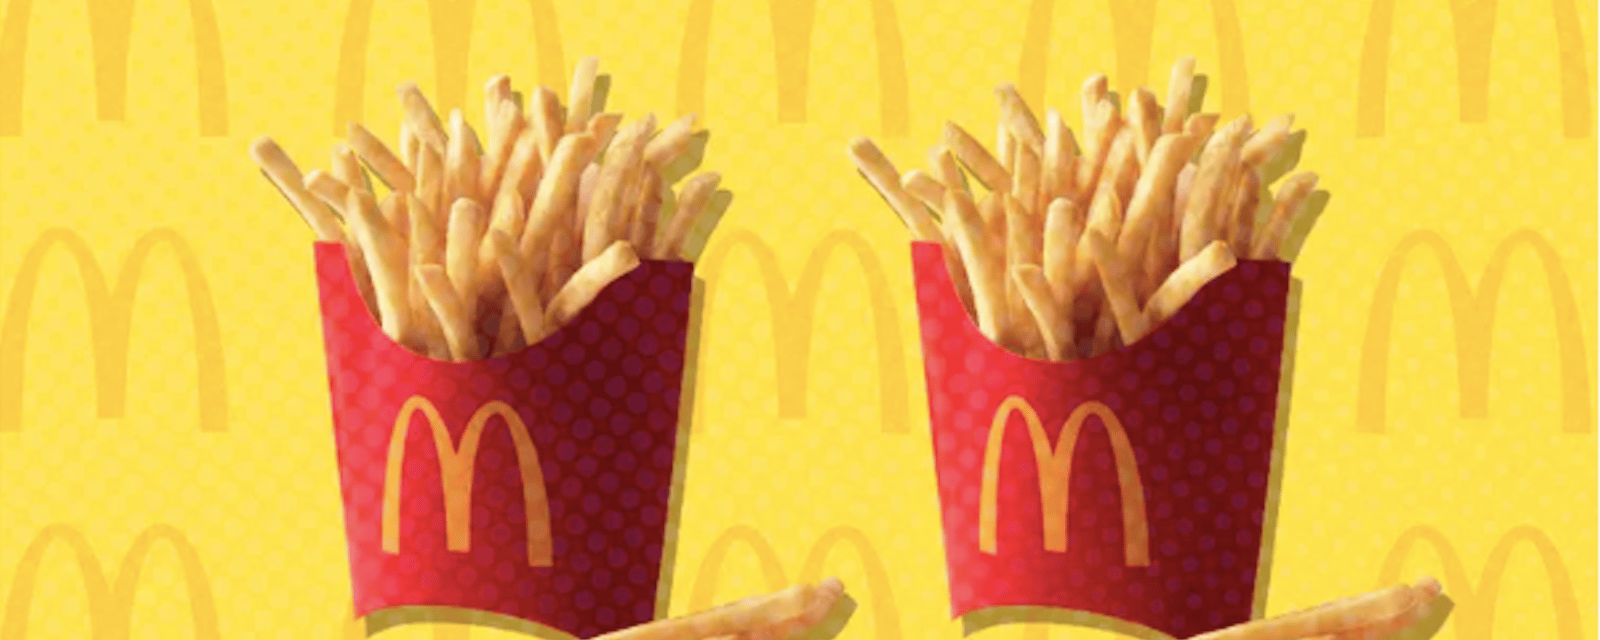 Les frites de McDonald's ne sont pas que des pommes de terre. Voici ce qu'elles contiennent.